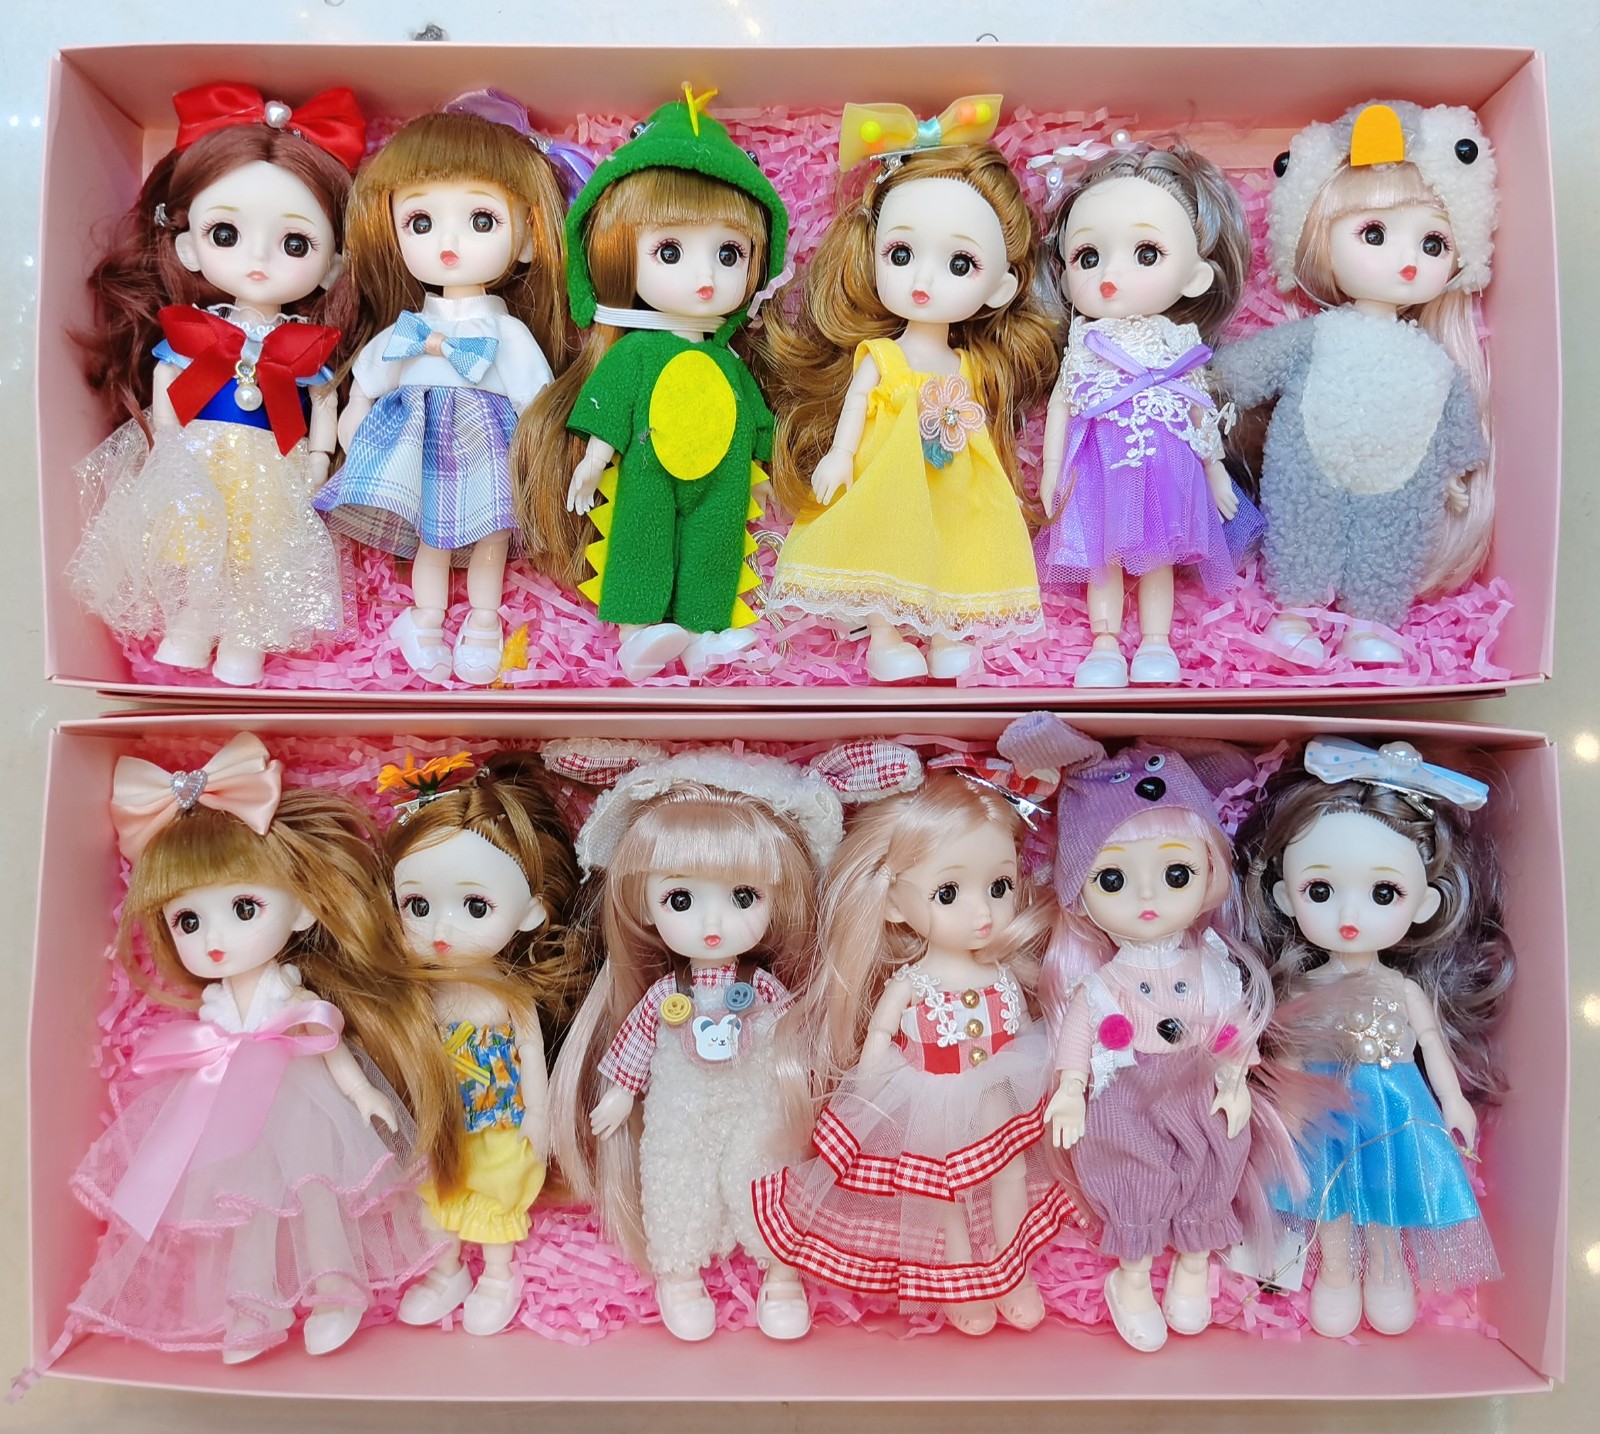 义乌市熙笑果丁文化创意有限公司批发挡搪塑胶芭比娃娃、肥童娃娃等玩具产品